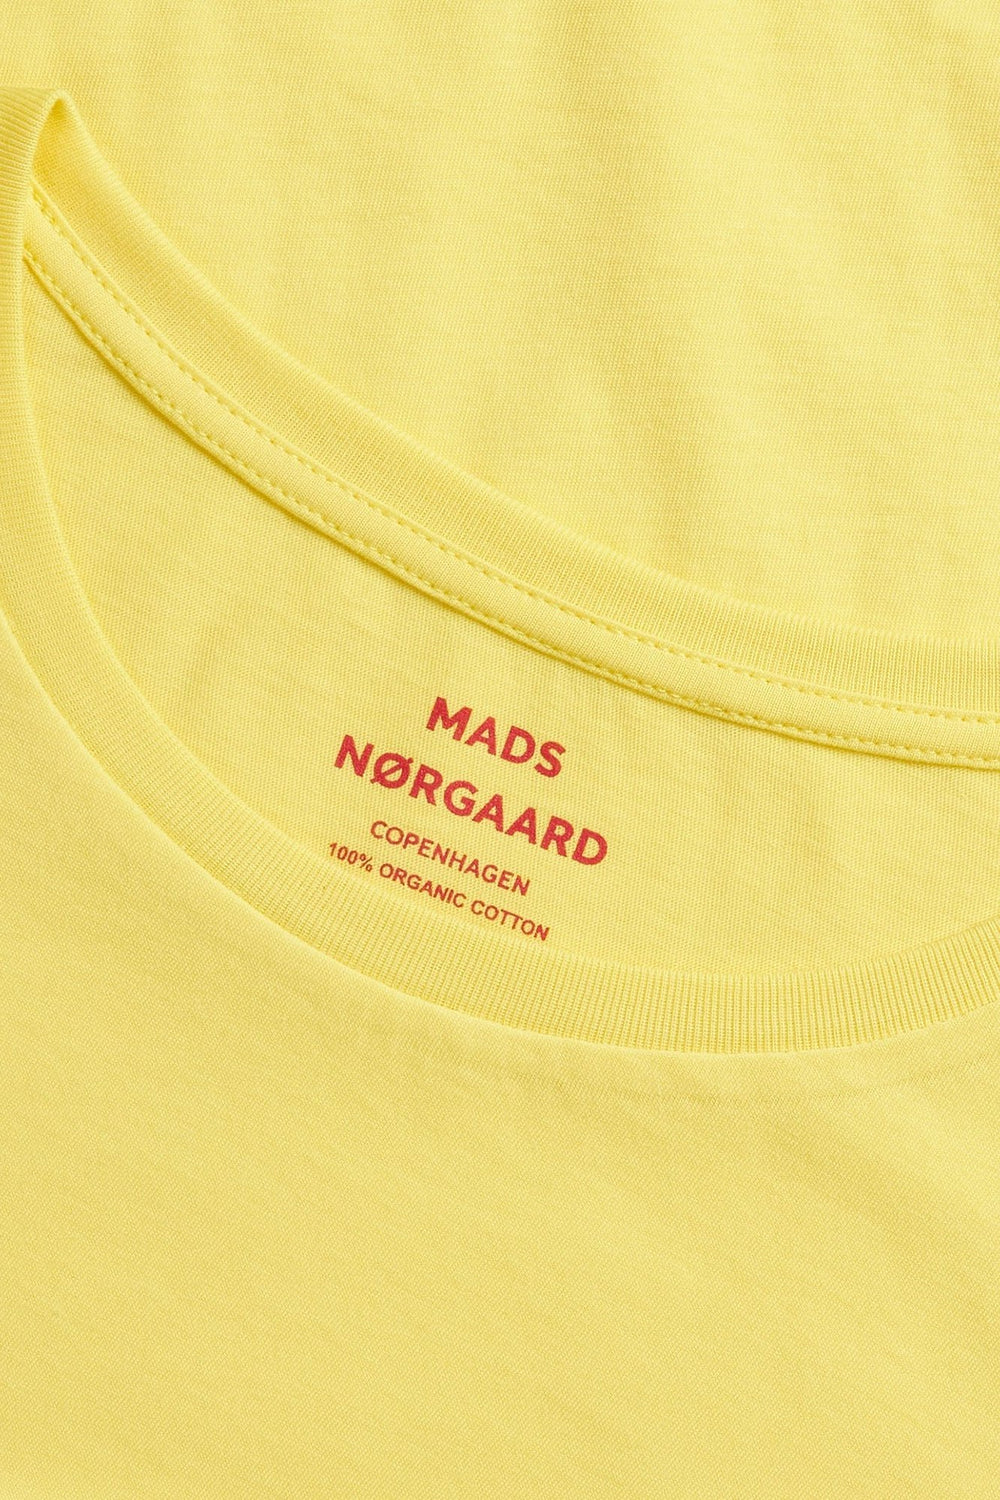 Mads Nørgaard | T-Shirt | Organic Jersey Teasy Tee, Lemon Zest